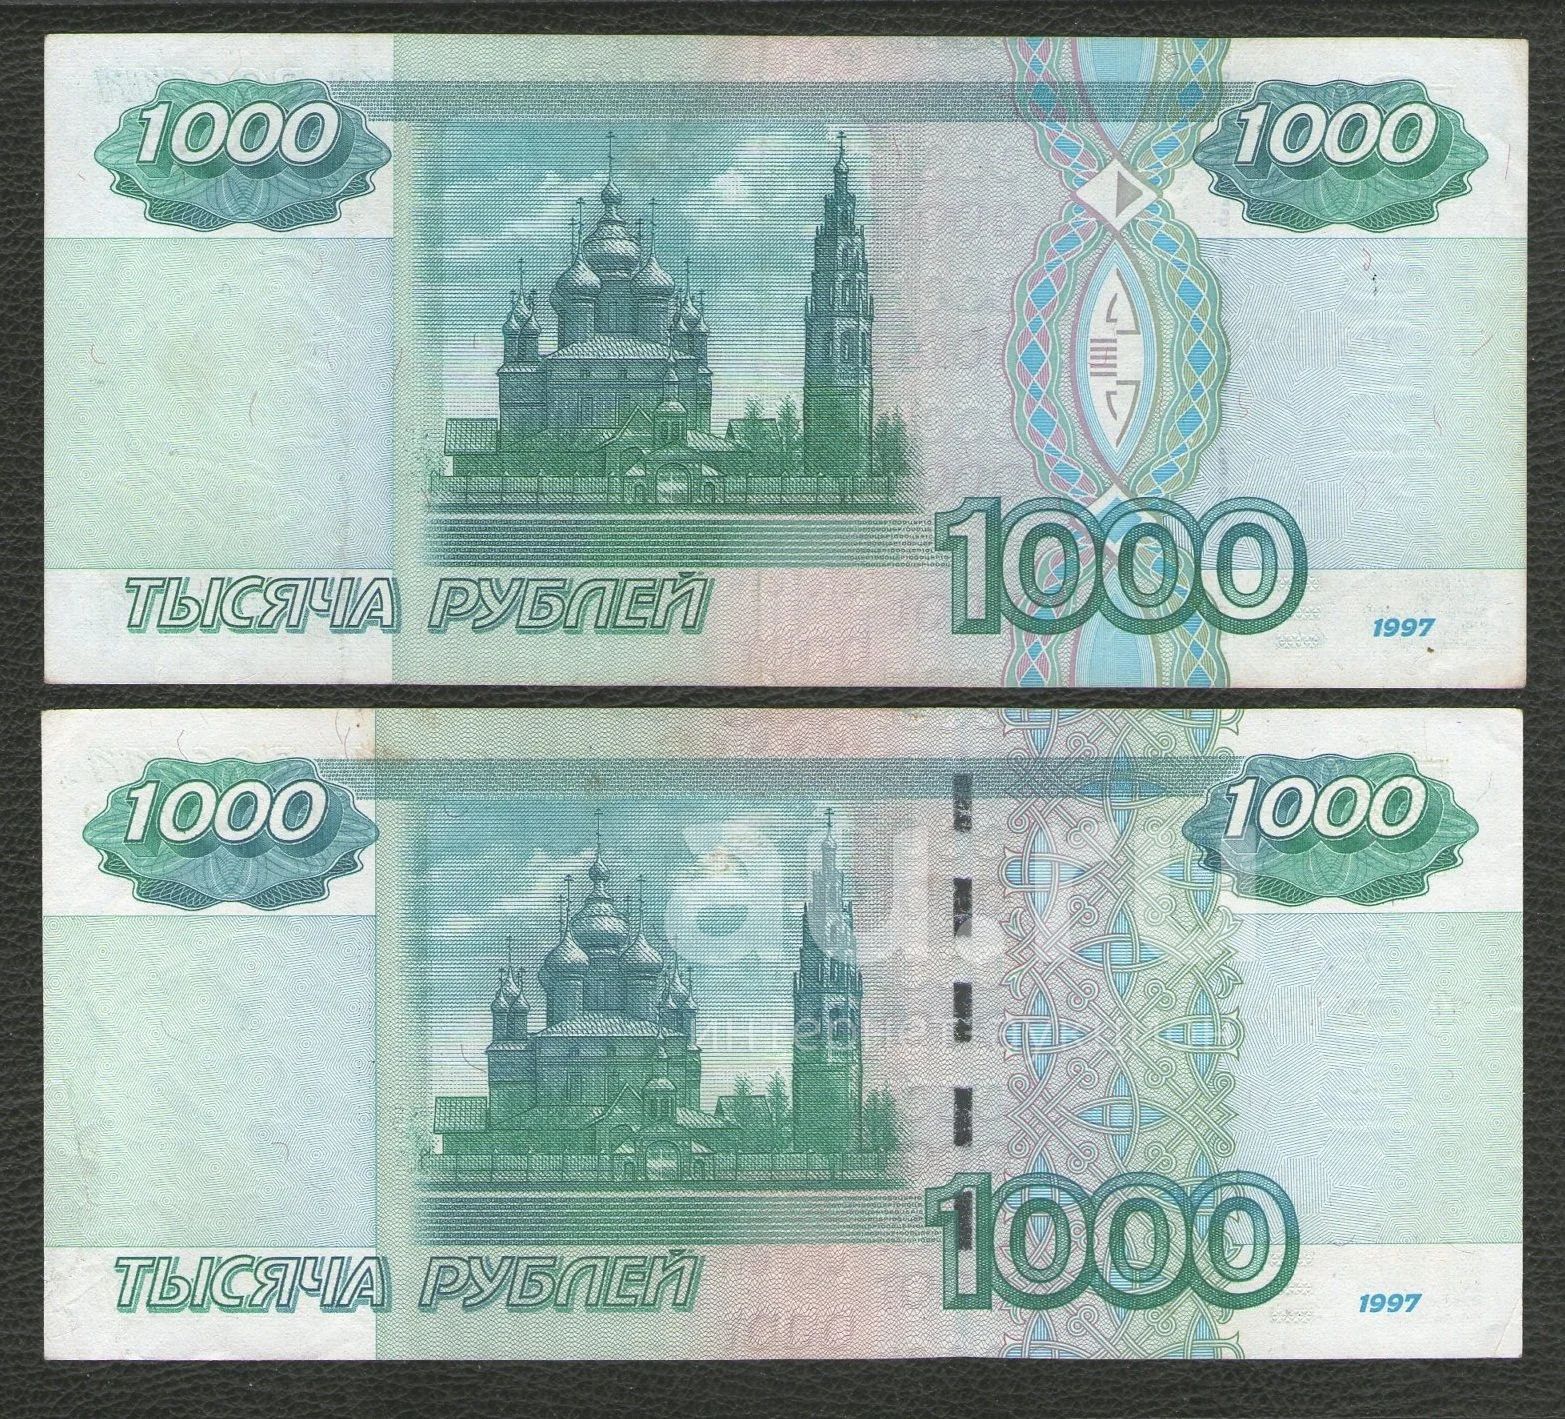 1000 Рублей 1997 года. 1000 Рублей первый выпуск. Тысяча рублей первый выпуск. Первый выпуск 1000 рублей 1997.